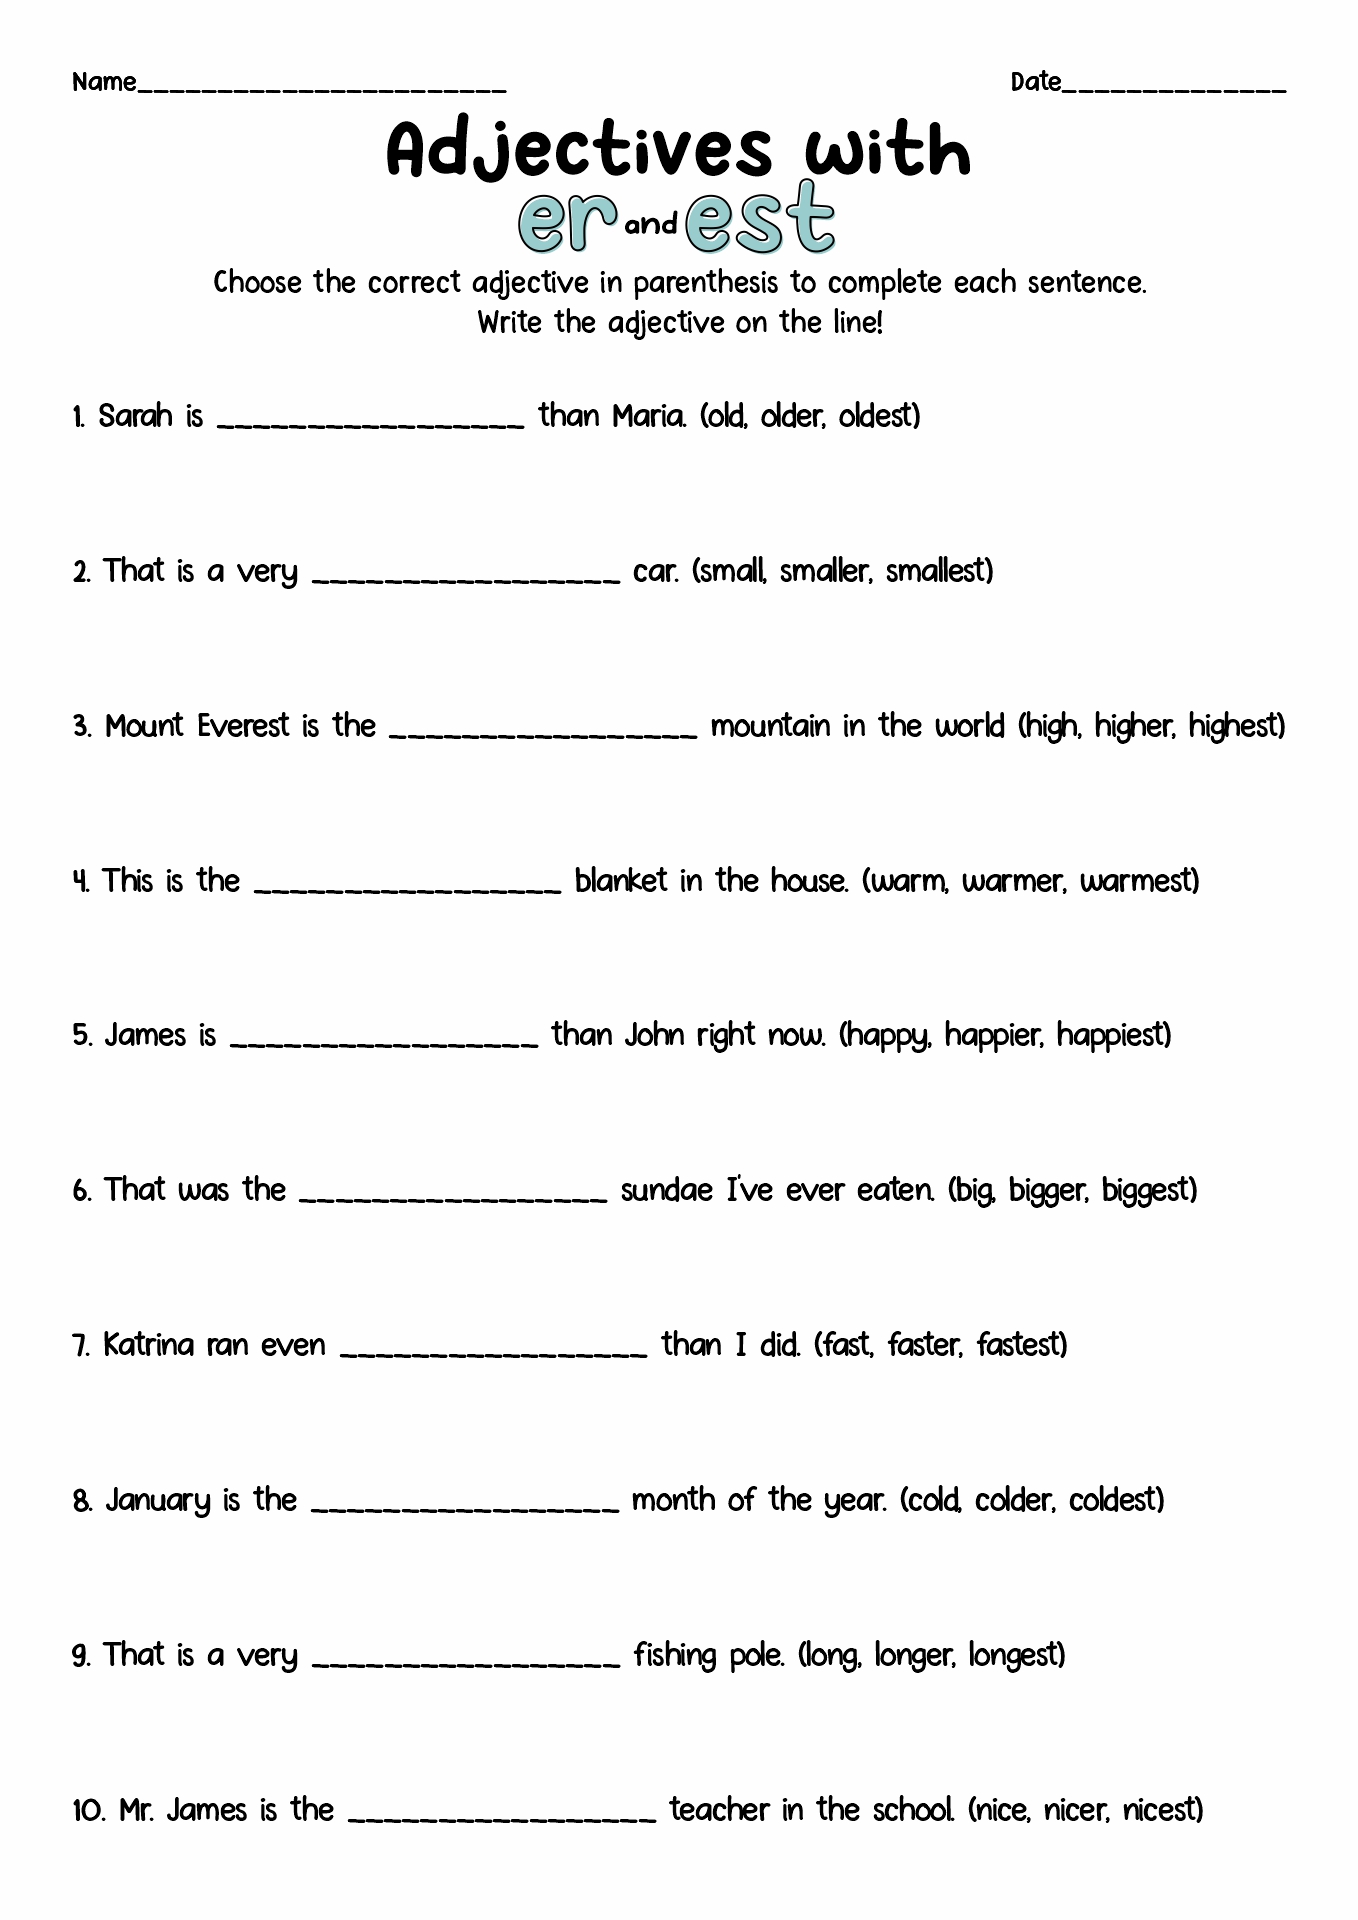 Super Teacher Worksheets Adjectives Image